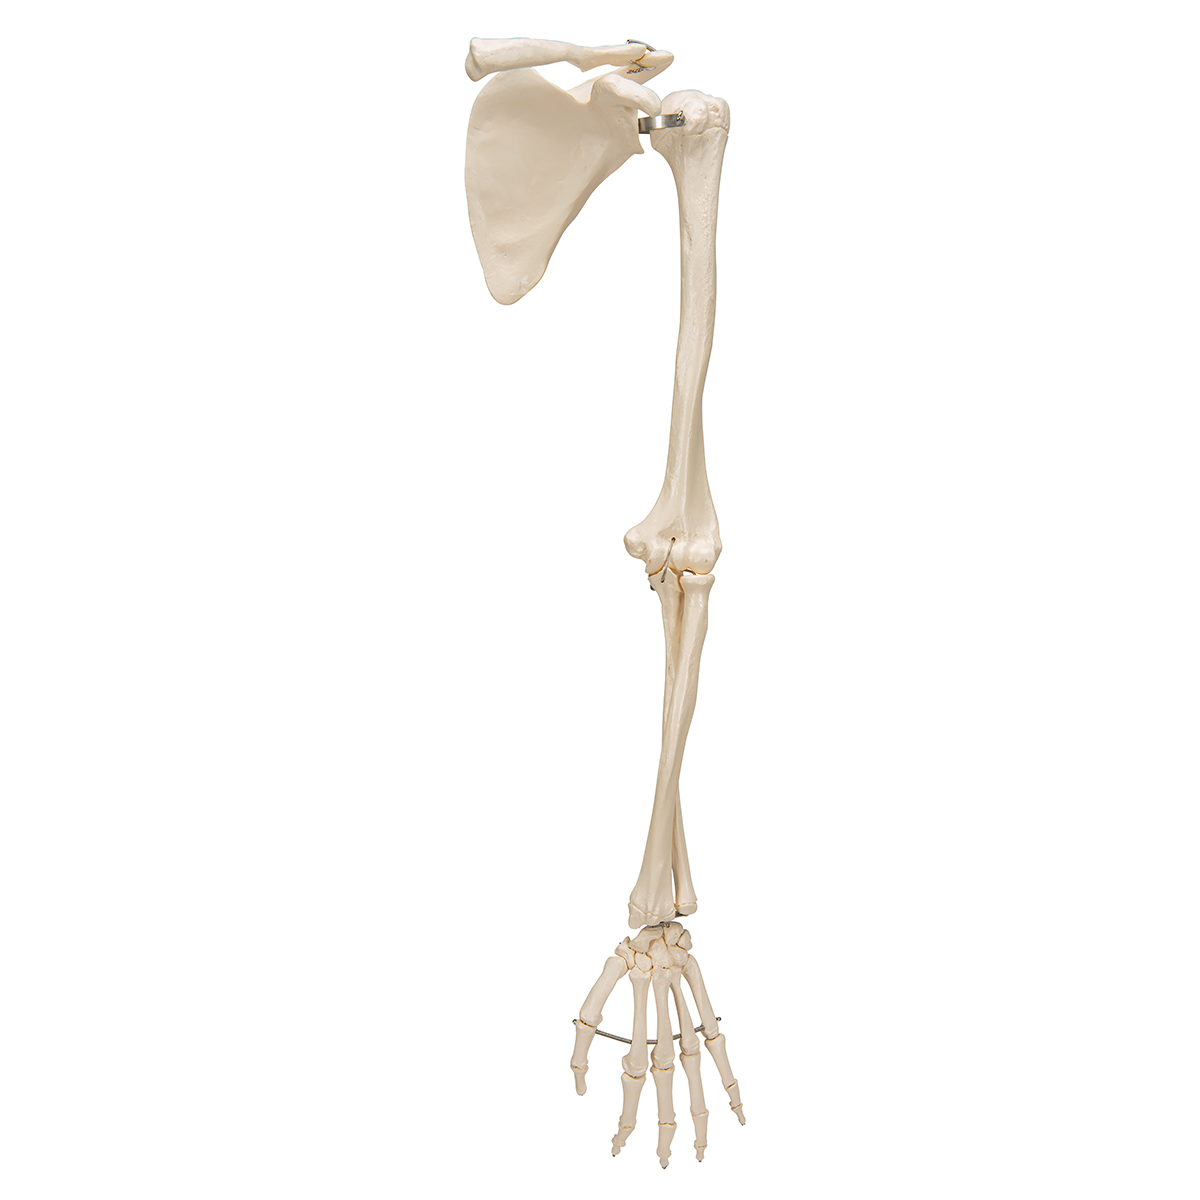 Illustration Du Squelette De L'anatomie 3d De Membres Supérieurs